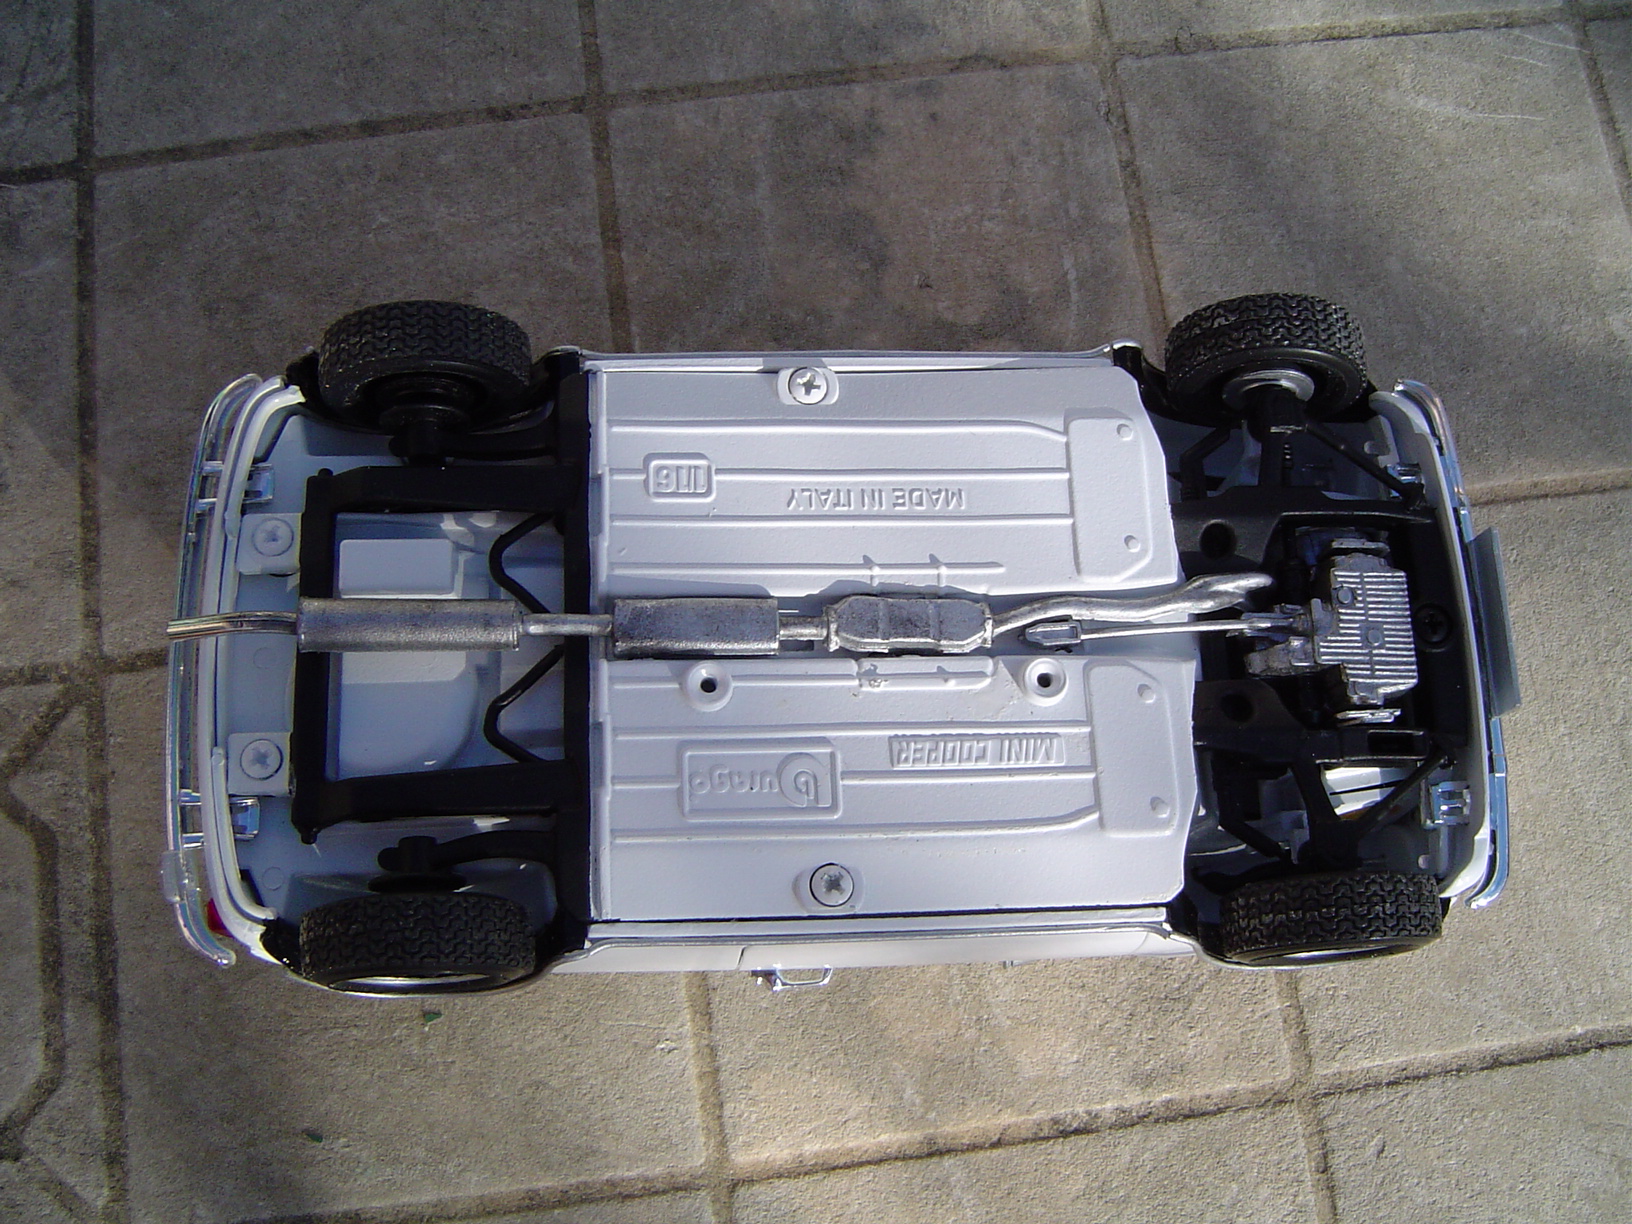 Mini Cooper 1.3i (1992)